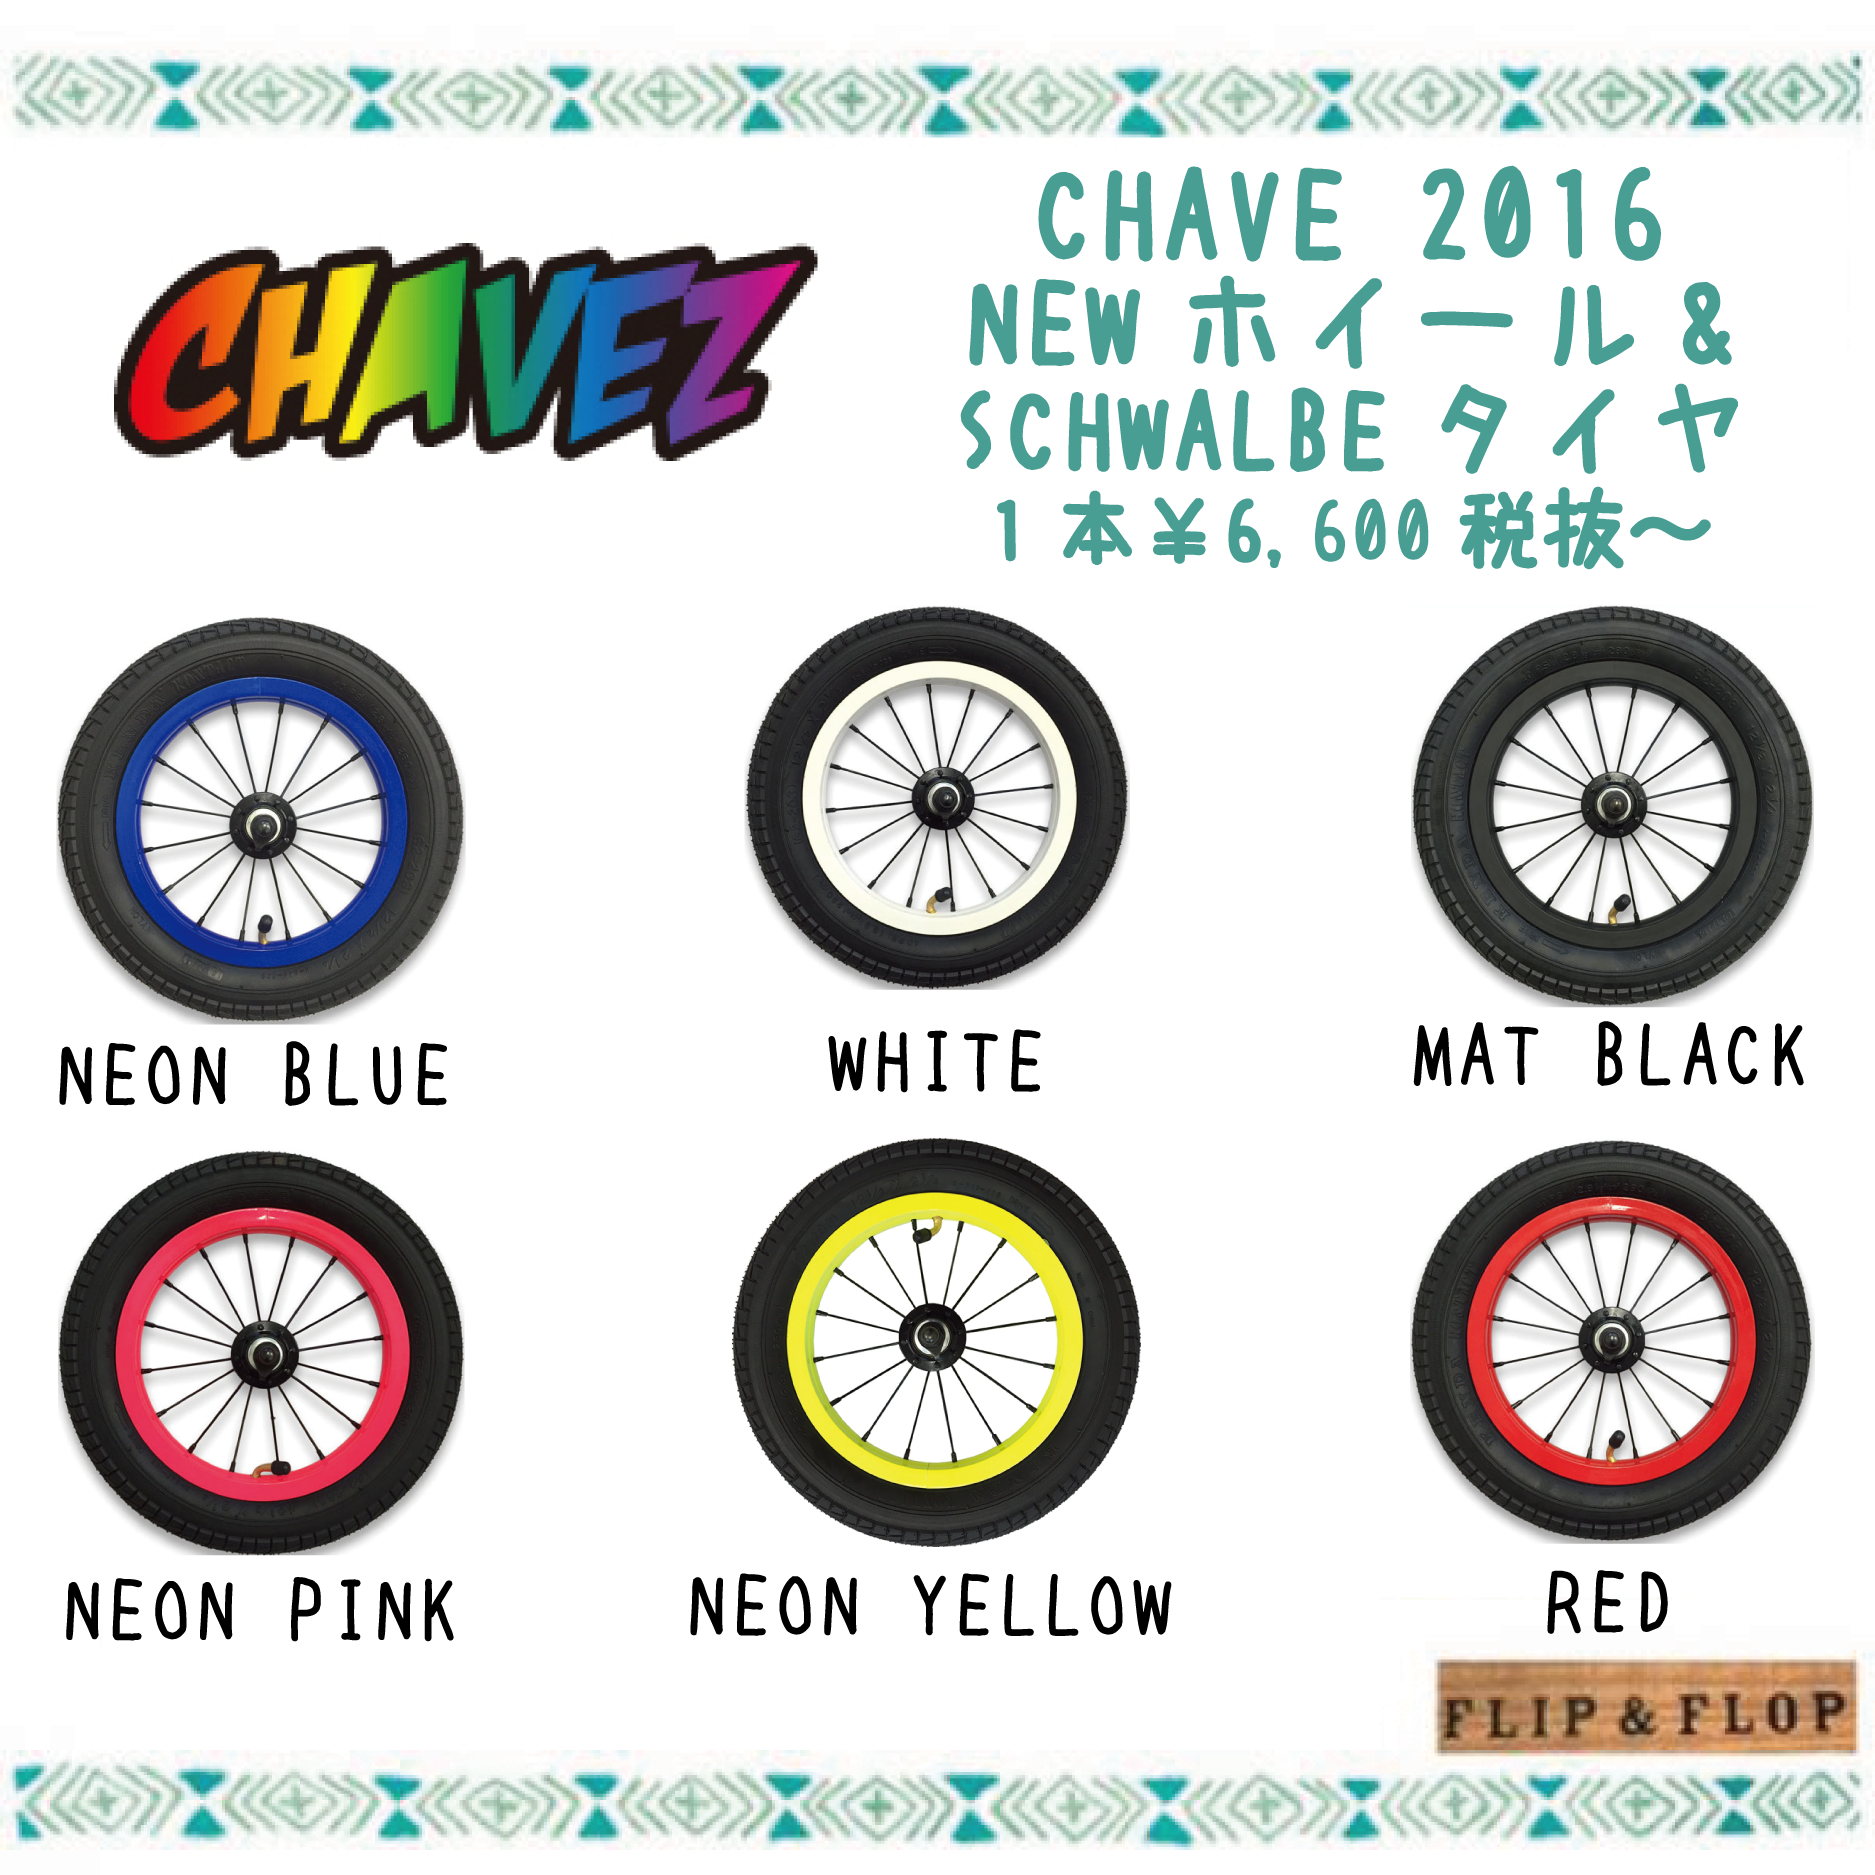 CHAVEZ タイヤセット20162